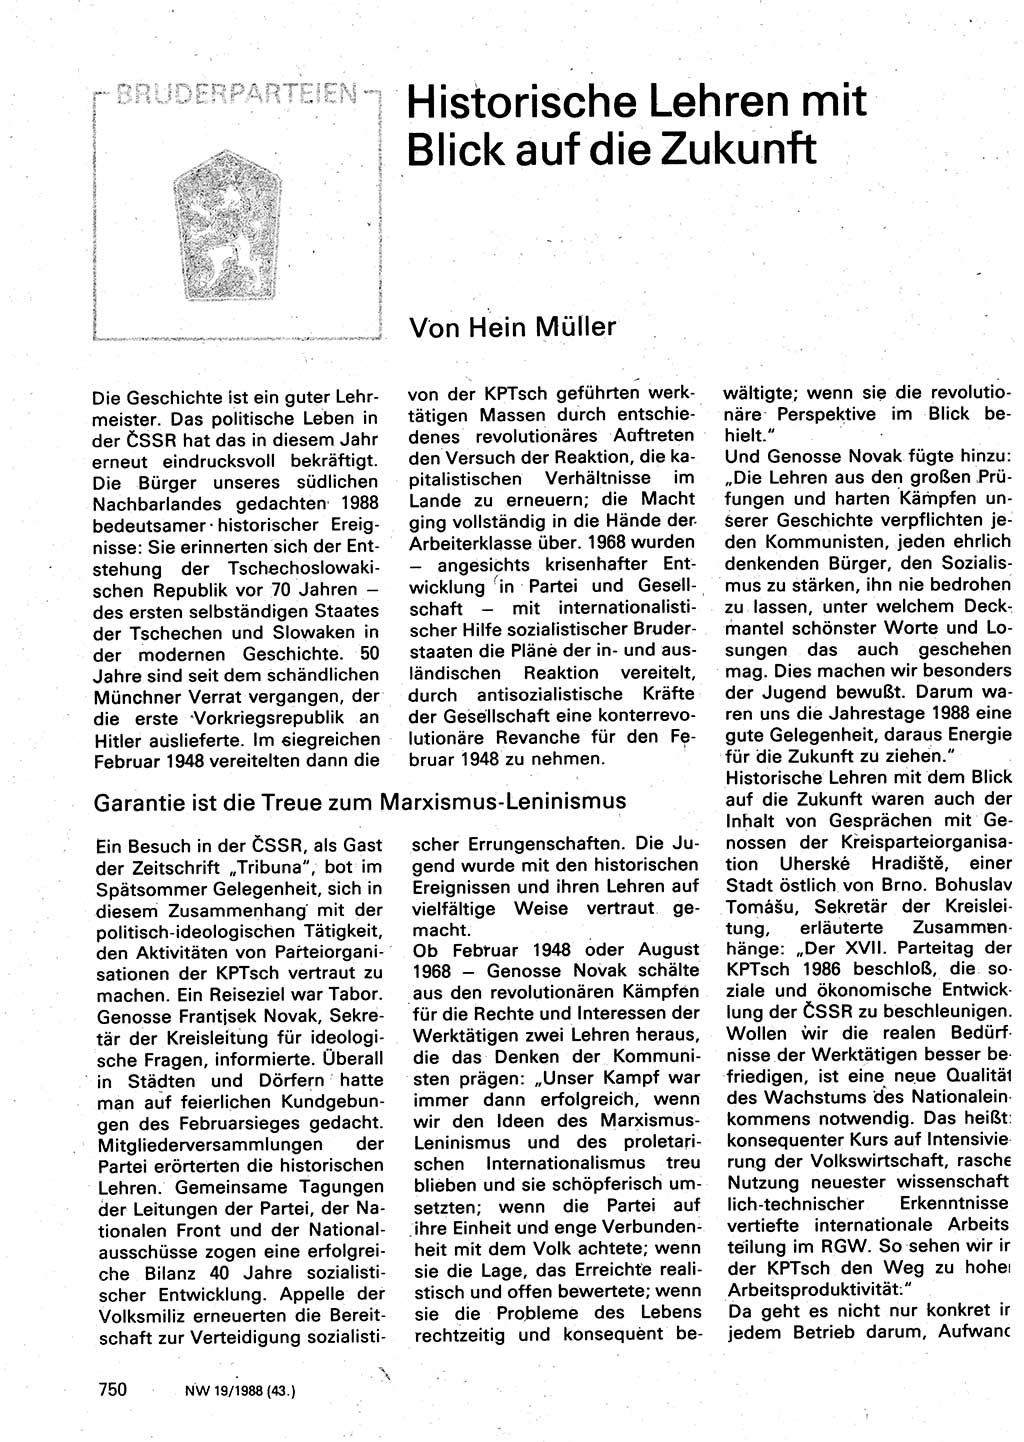 Neuer Weg (NW), Organ des Zentralkomitees (ZK) der SED (Sozialistische Einheitspartei Deutschlands) für Fragen des Parteilebens, 43. Jahrgang [Deutsche Demokratische Republik (DDR)] 1988, Seite 750 (NW ZK SED DDR 1988, S. 750)